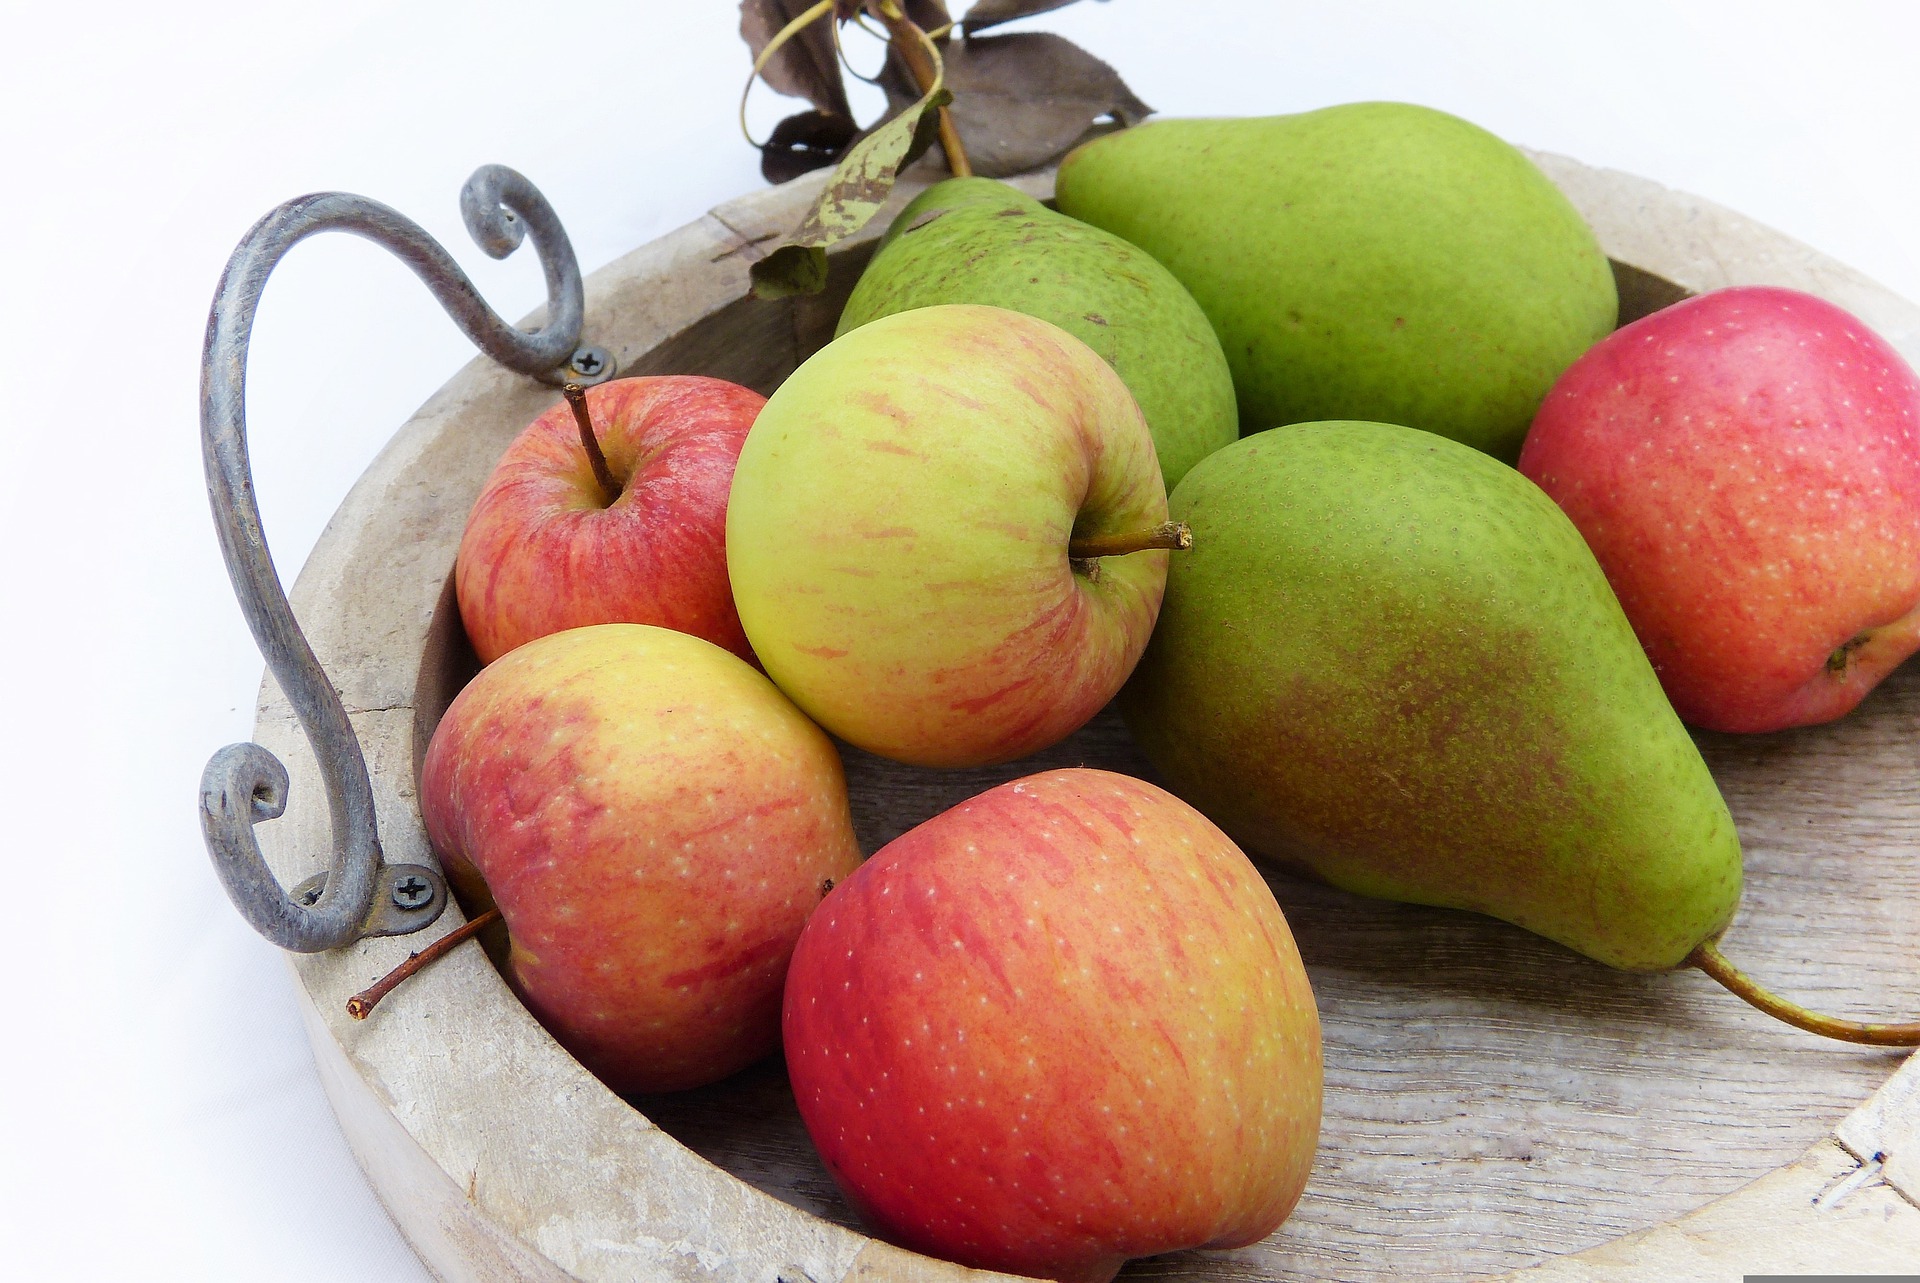 Öffentliche Obstsortenbestimmung von Äpfel und Birnen